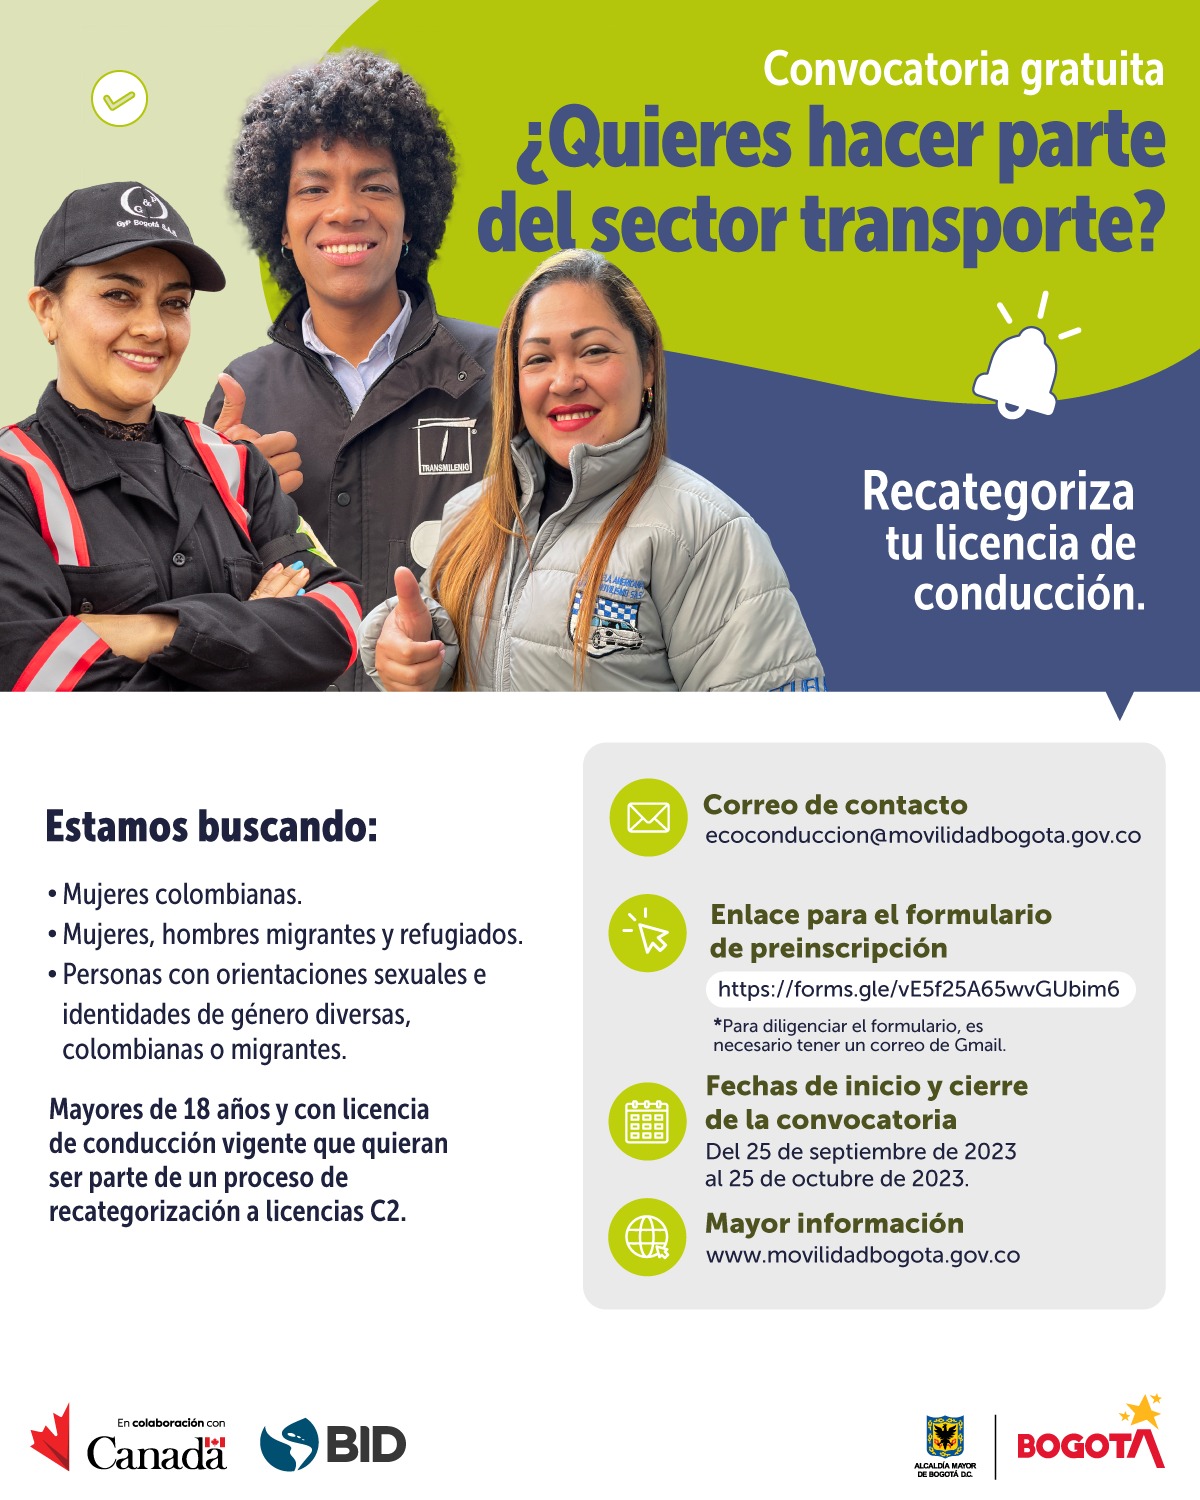 Convocatoria para recategorizar la licencia de conducción en Bogotá